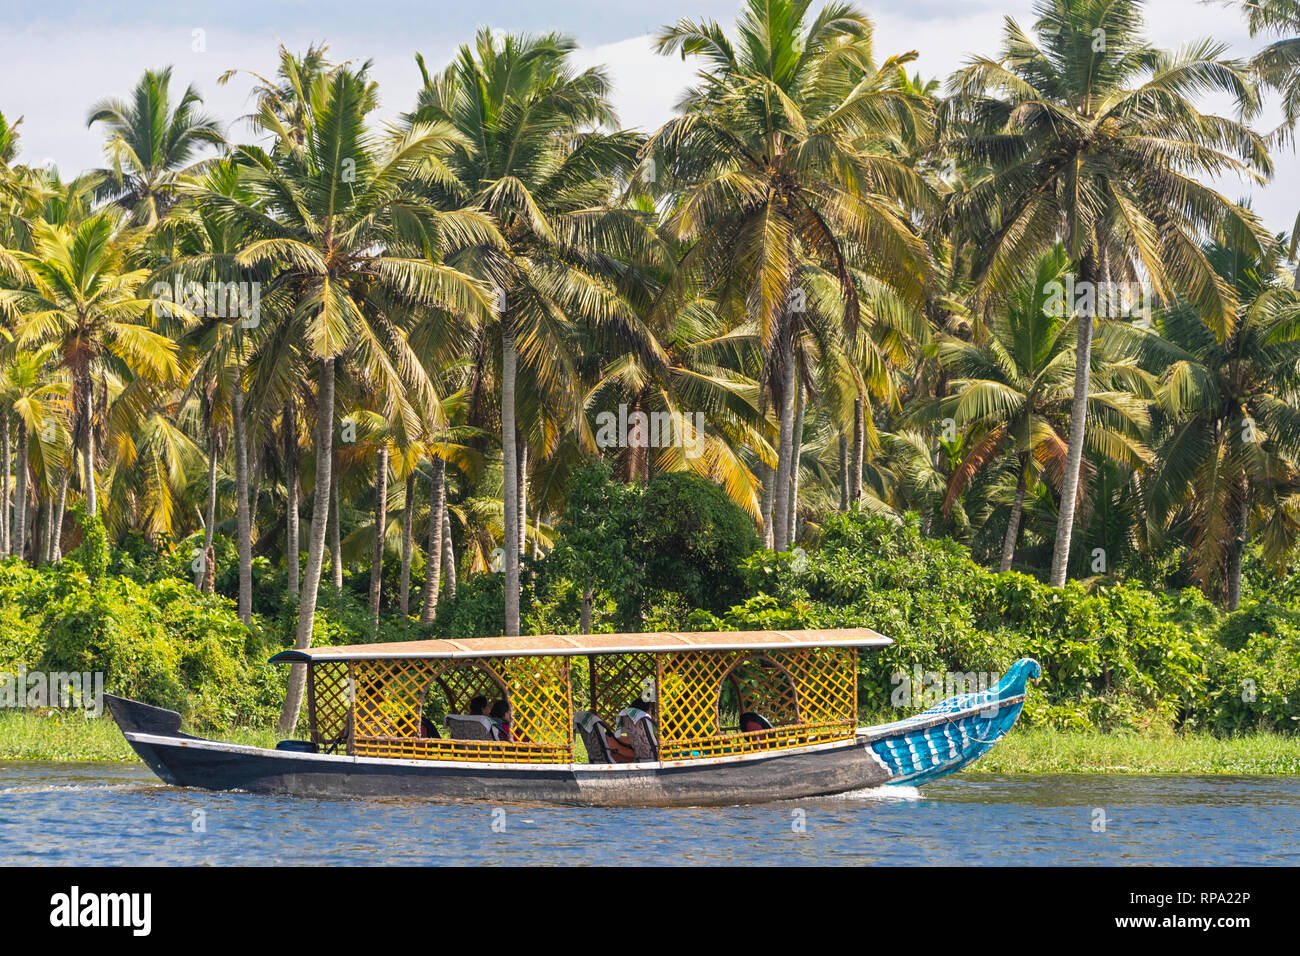 Une journée typique de croisière bateau flottant sur l'eau dormante Keralan lors d'une journée ensoleillée avec ciel bleu et de palmiers. Banque D'Images